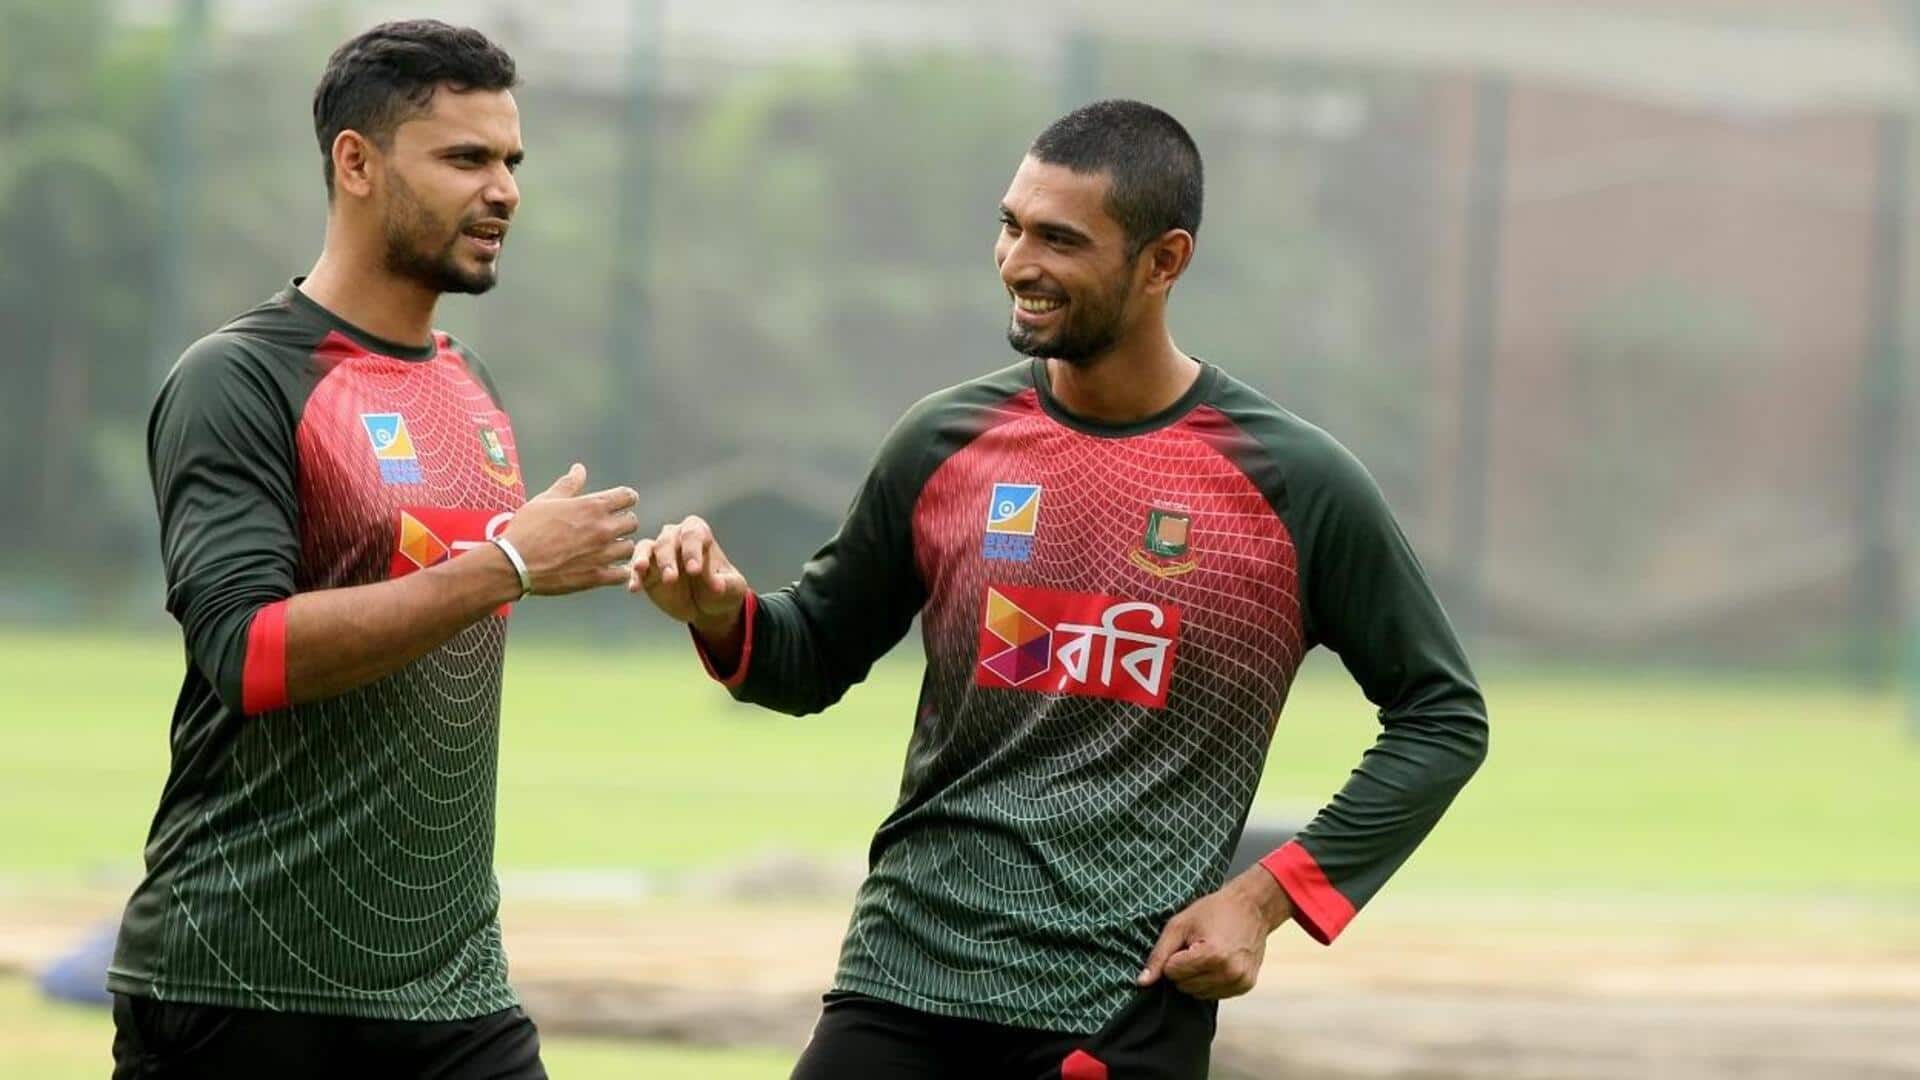 महमूदुल्लाह विश्व कप में बांग्लादेश के लिए सबसे ज्यादा छक्के लगाने वाले बल्लेबाज बने, जानिए आंकड़े